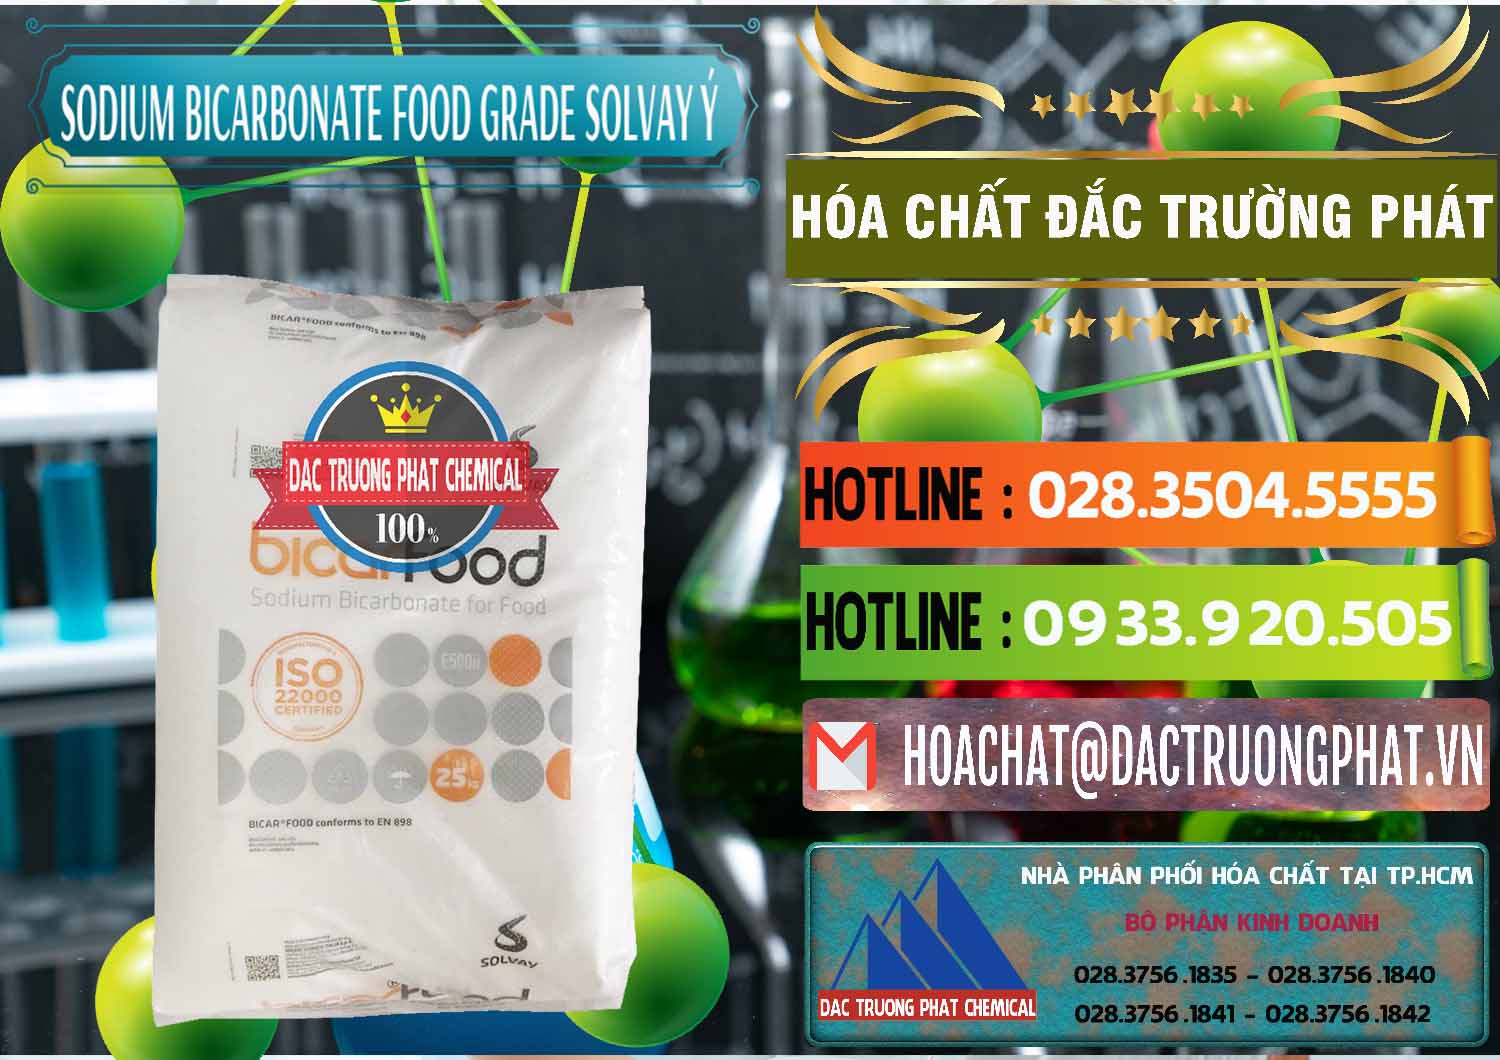 Đơn vị chuyên bán ( cung cấp ) Sodium Bicarbonate – Bicar NaHCO3 Food Grade Solvay Ý Italy - 0220 - Cty chuyên cung cấp _ kinh doanh hóa chất tại TP.HCM - cungcaphoachat.com.vn